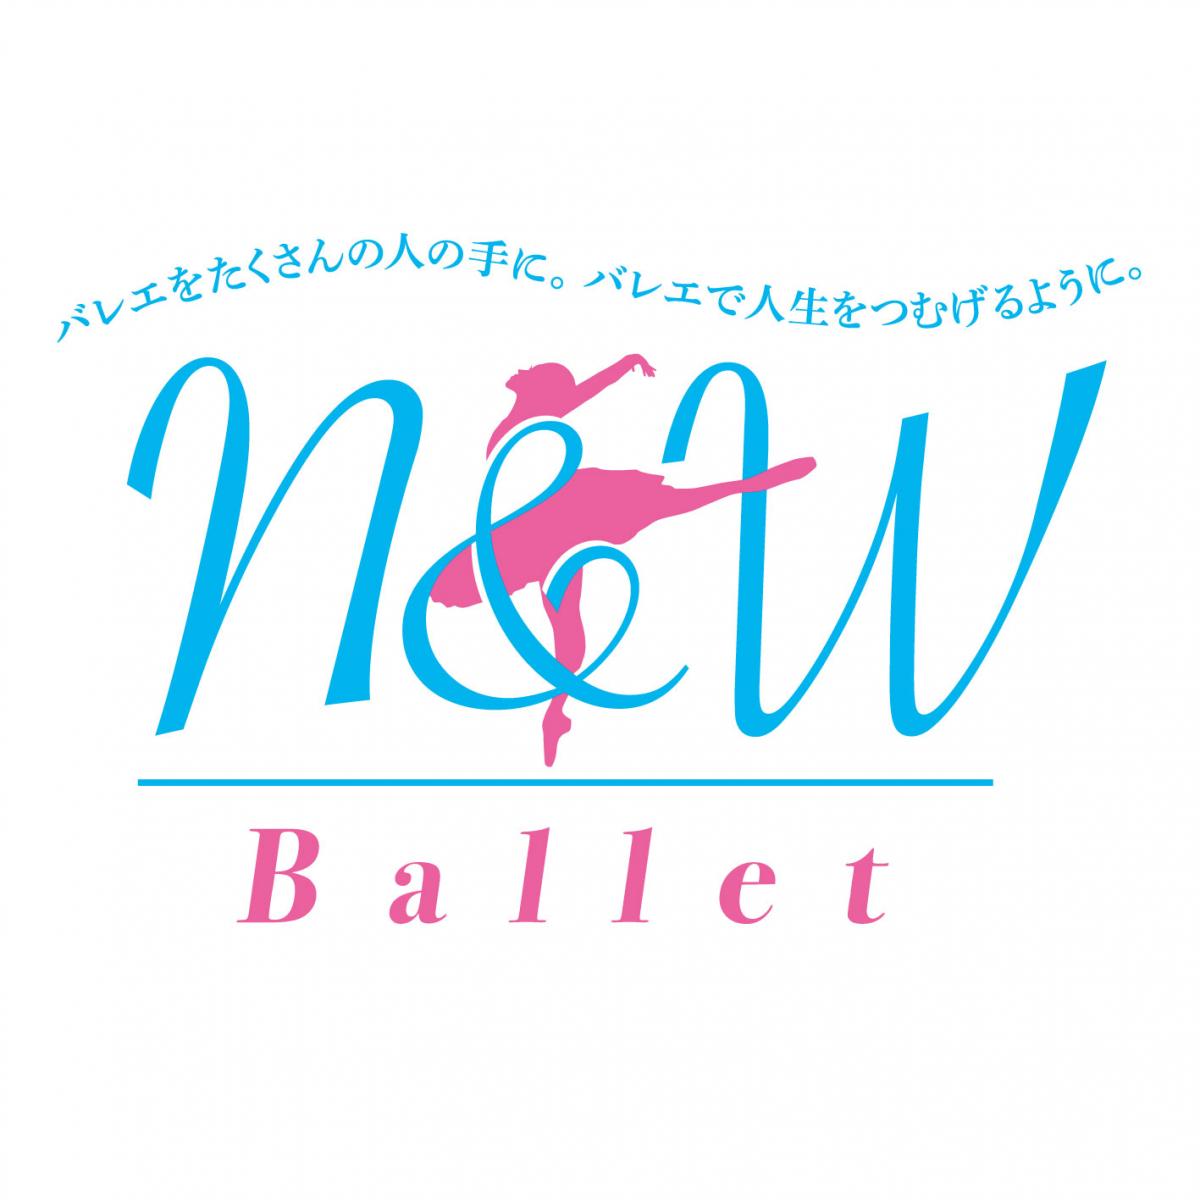 N&W Ballet発足の経緯